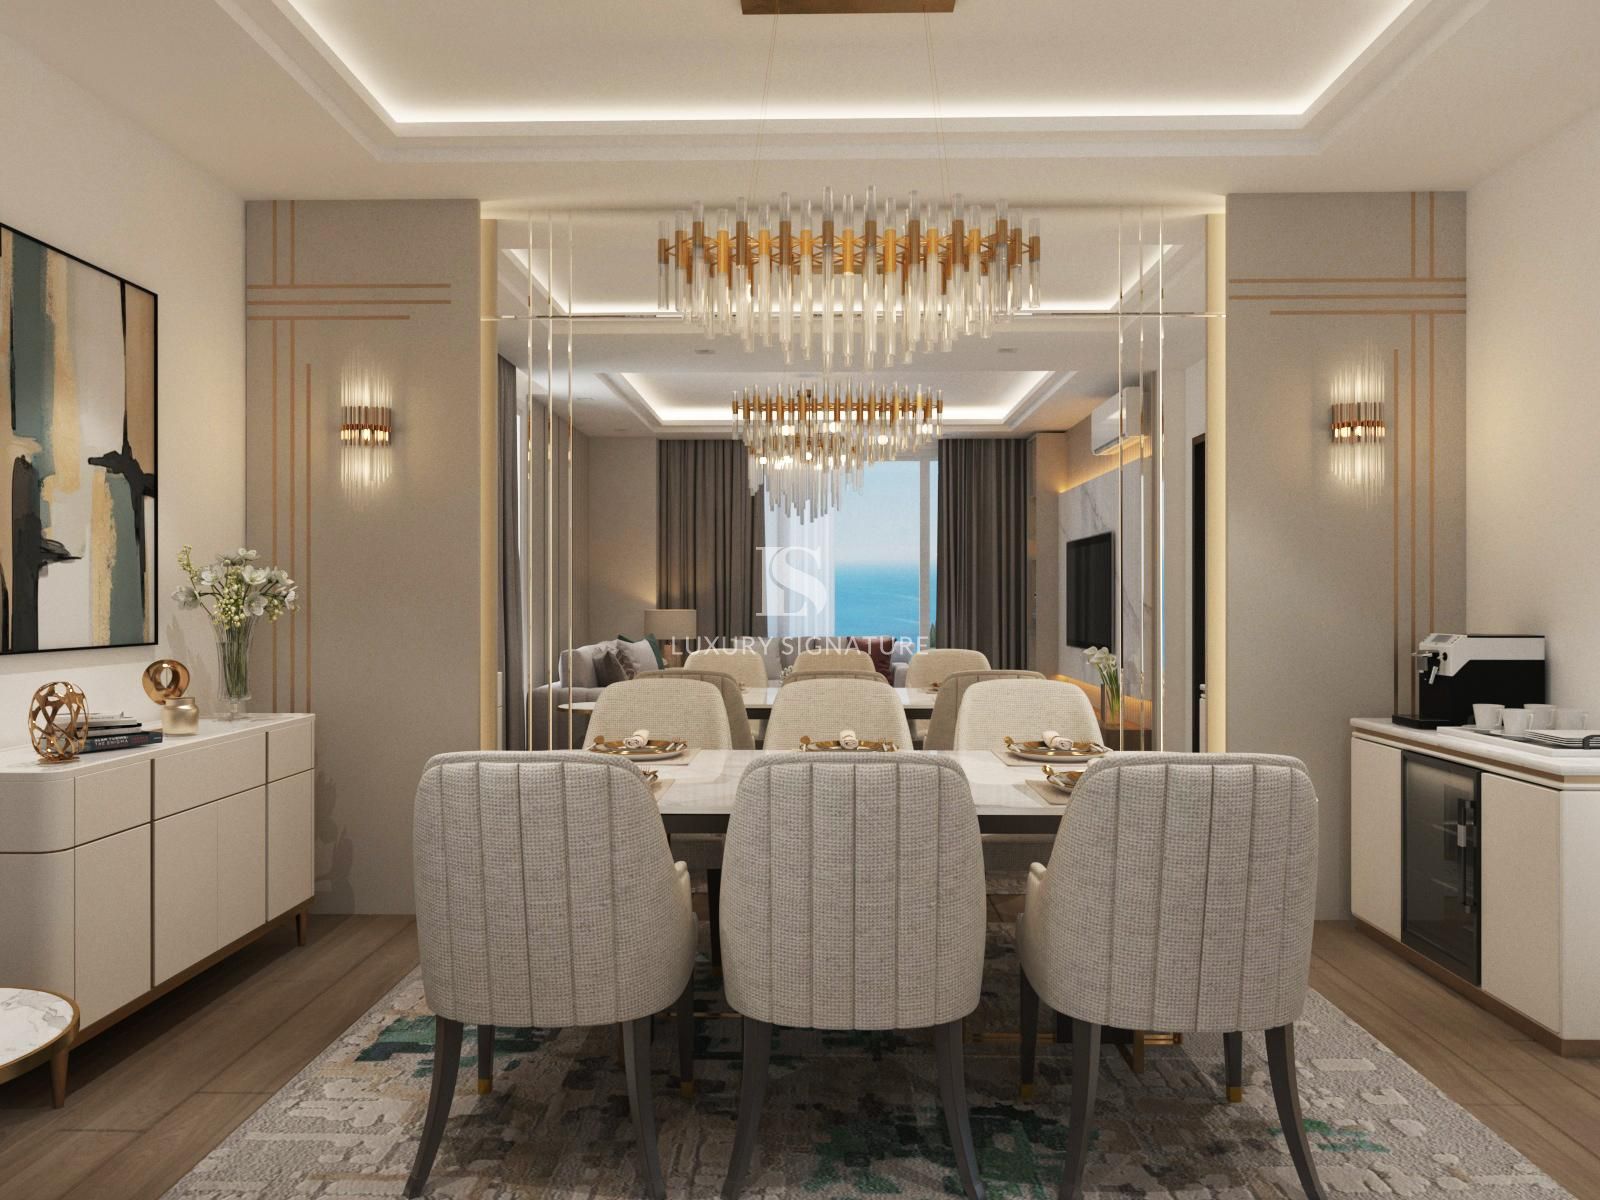 Luxury Signature interior Design Pic Ru